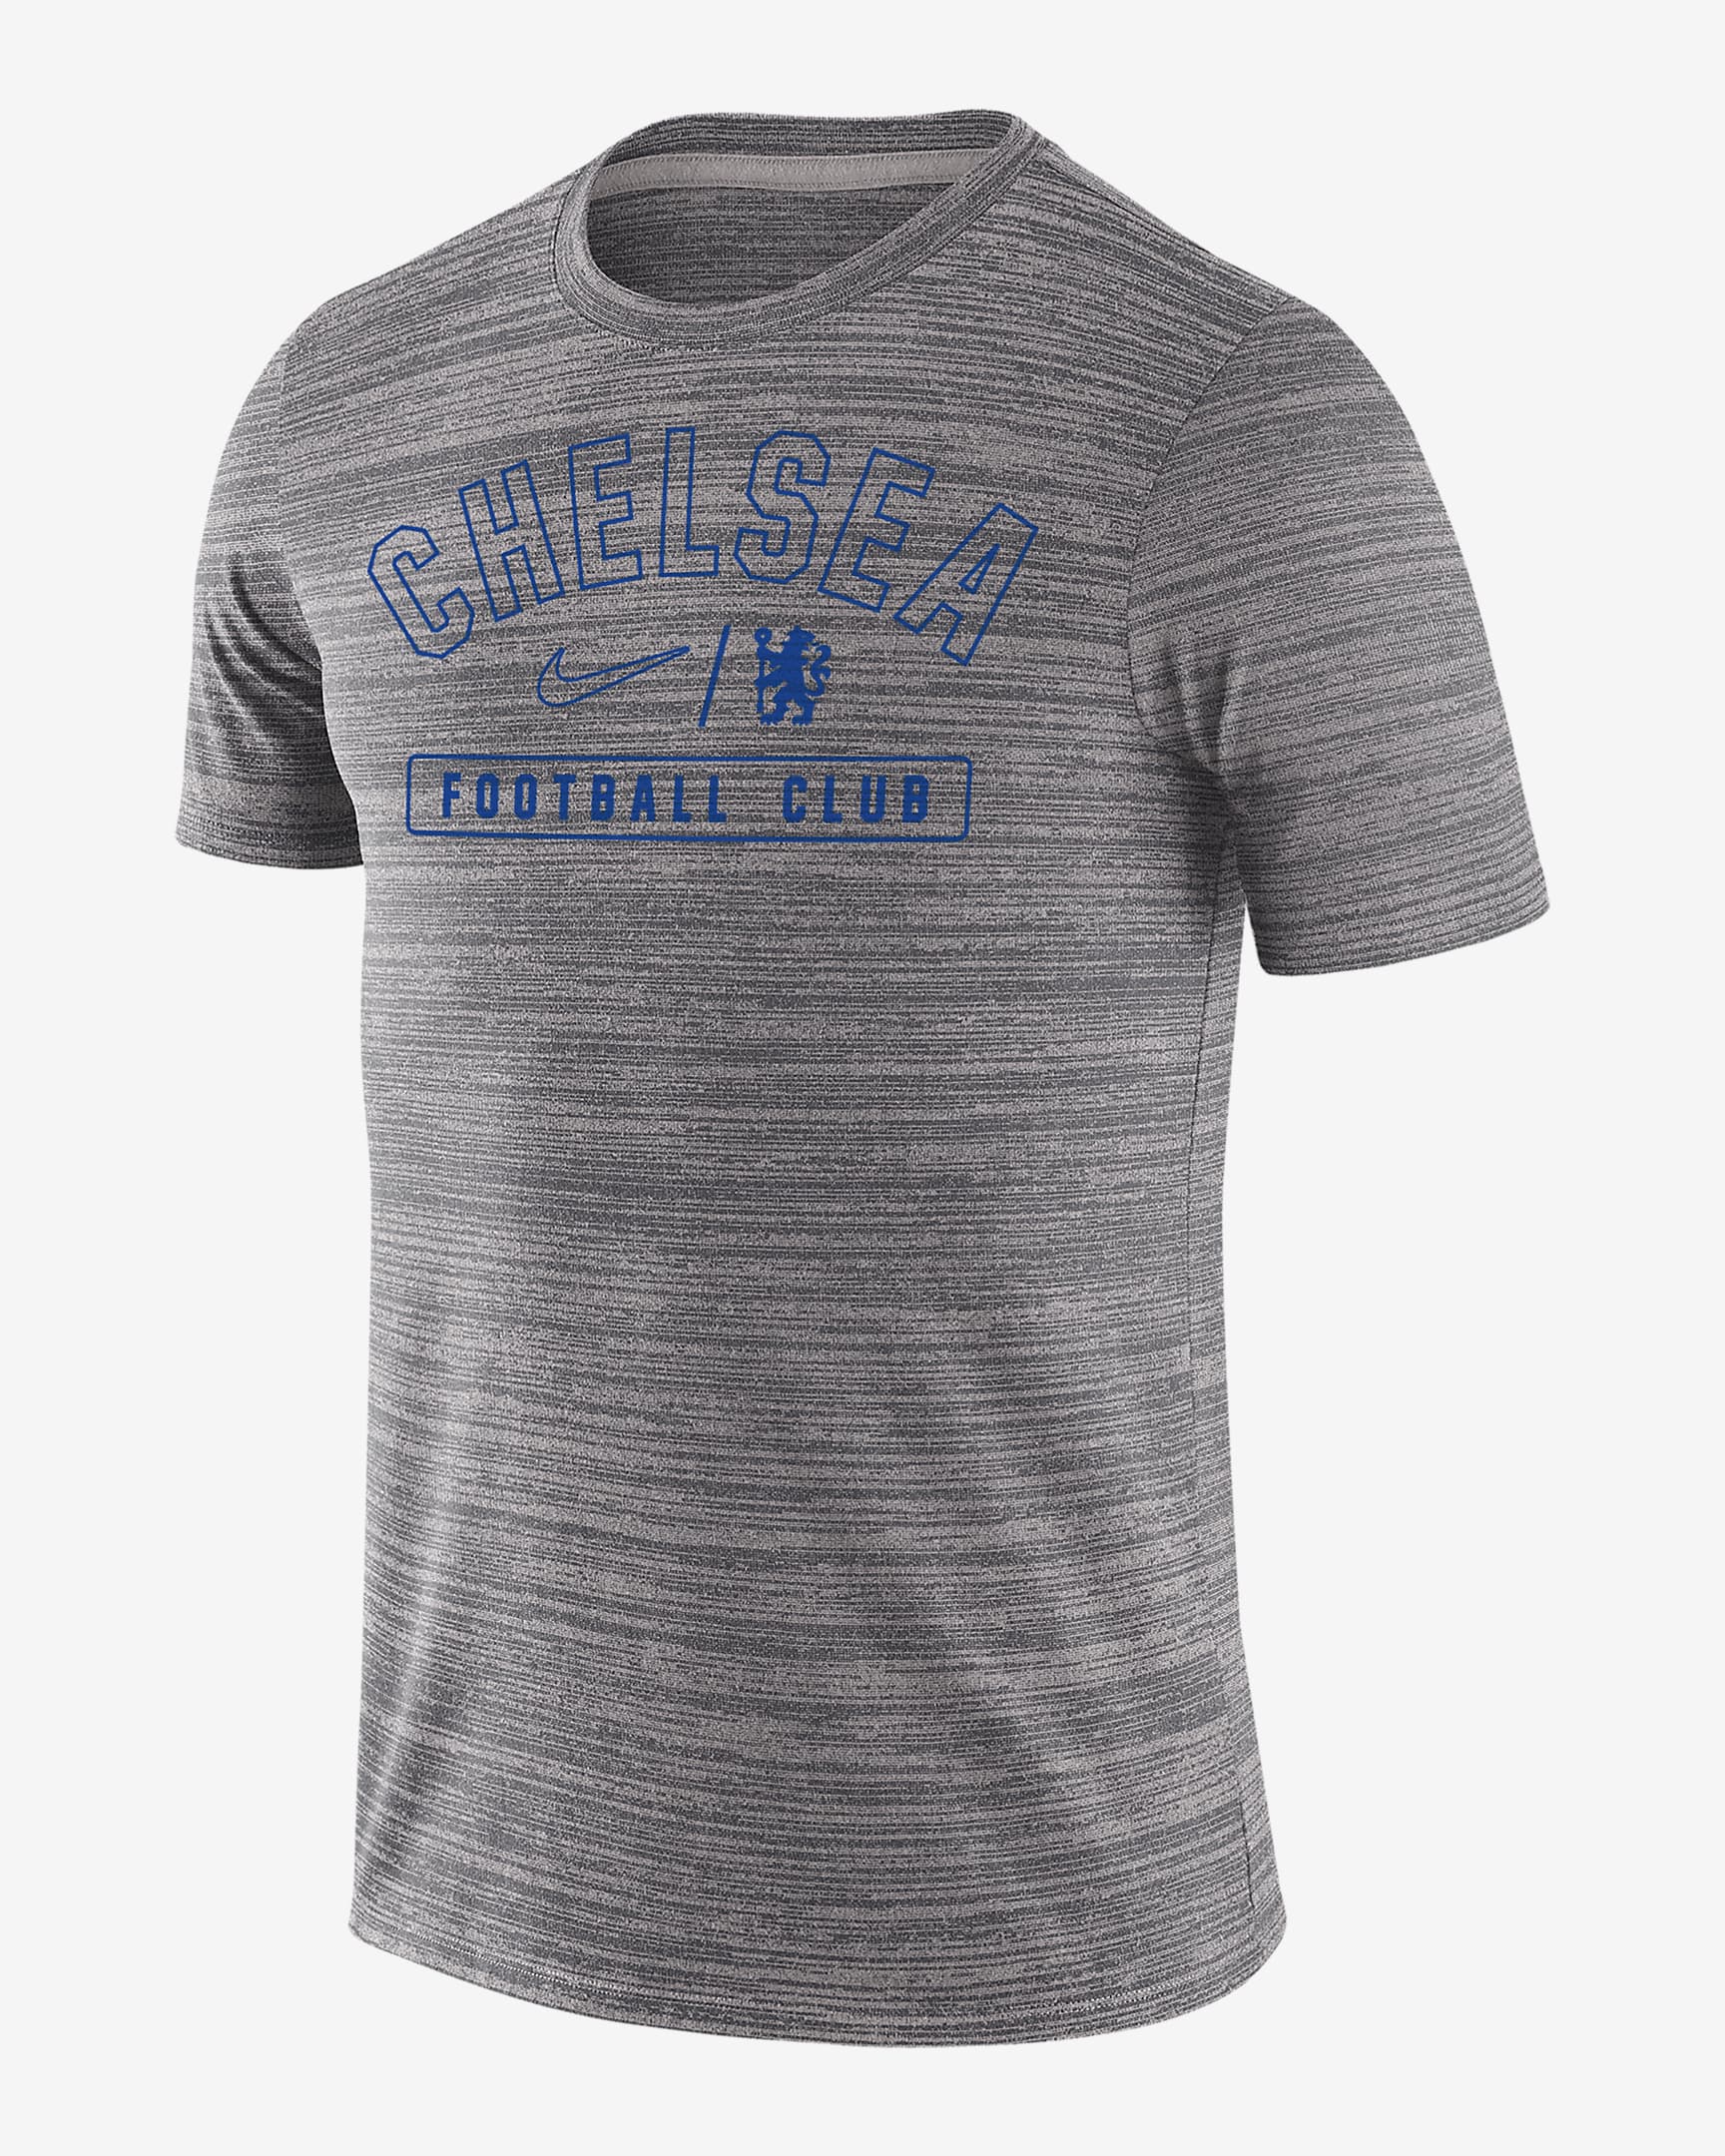 Chelsea FC Velocity Legend Men's Nike Soccer T-Shirt. Nike.com